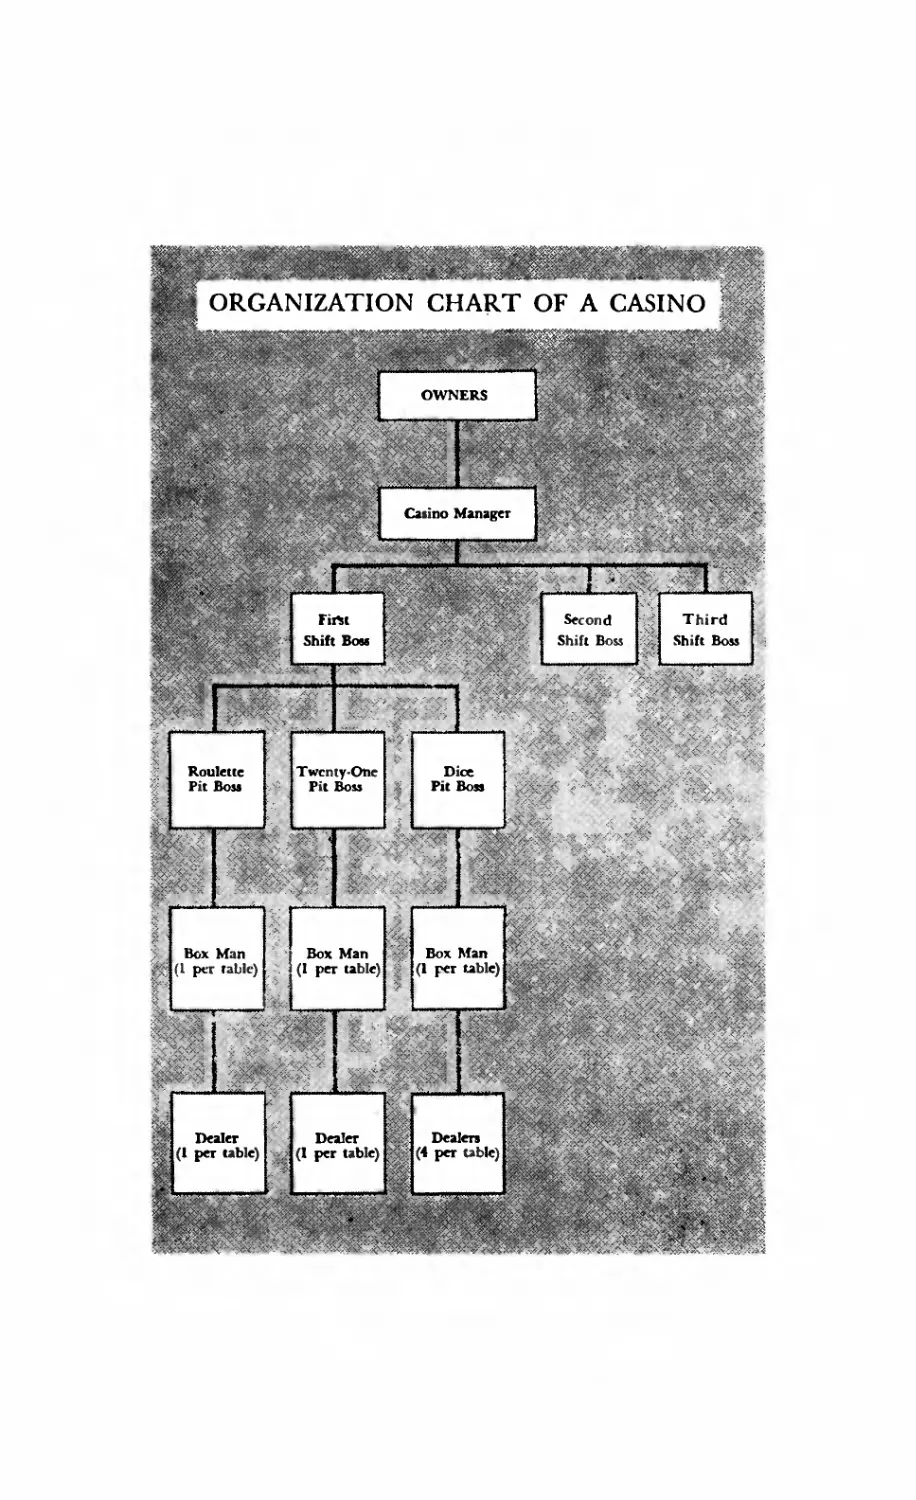 Organization Chart of a Casino